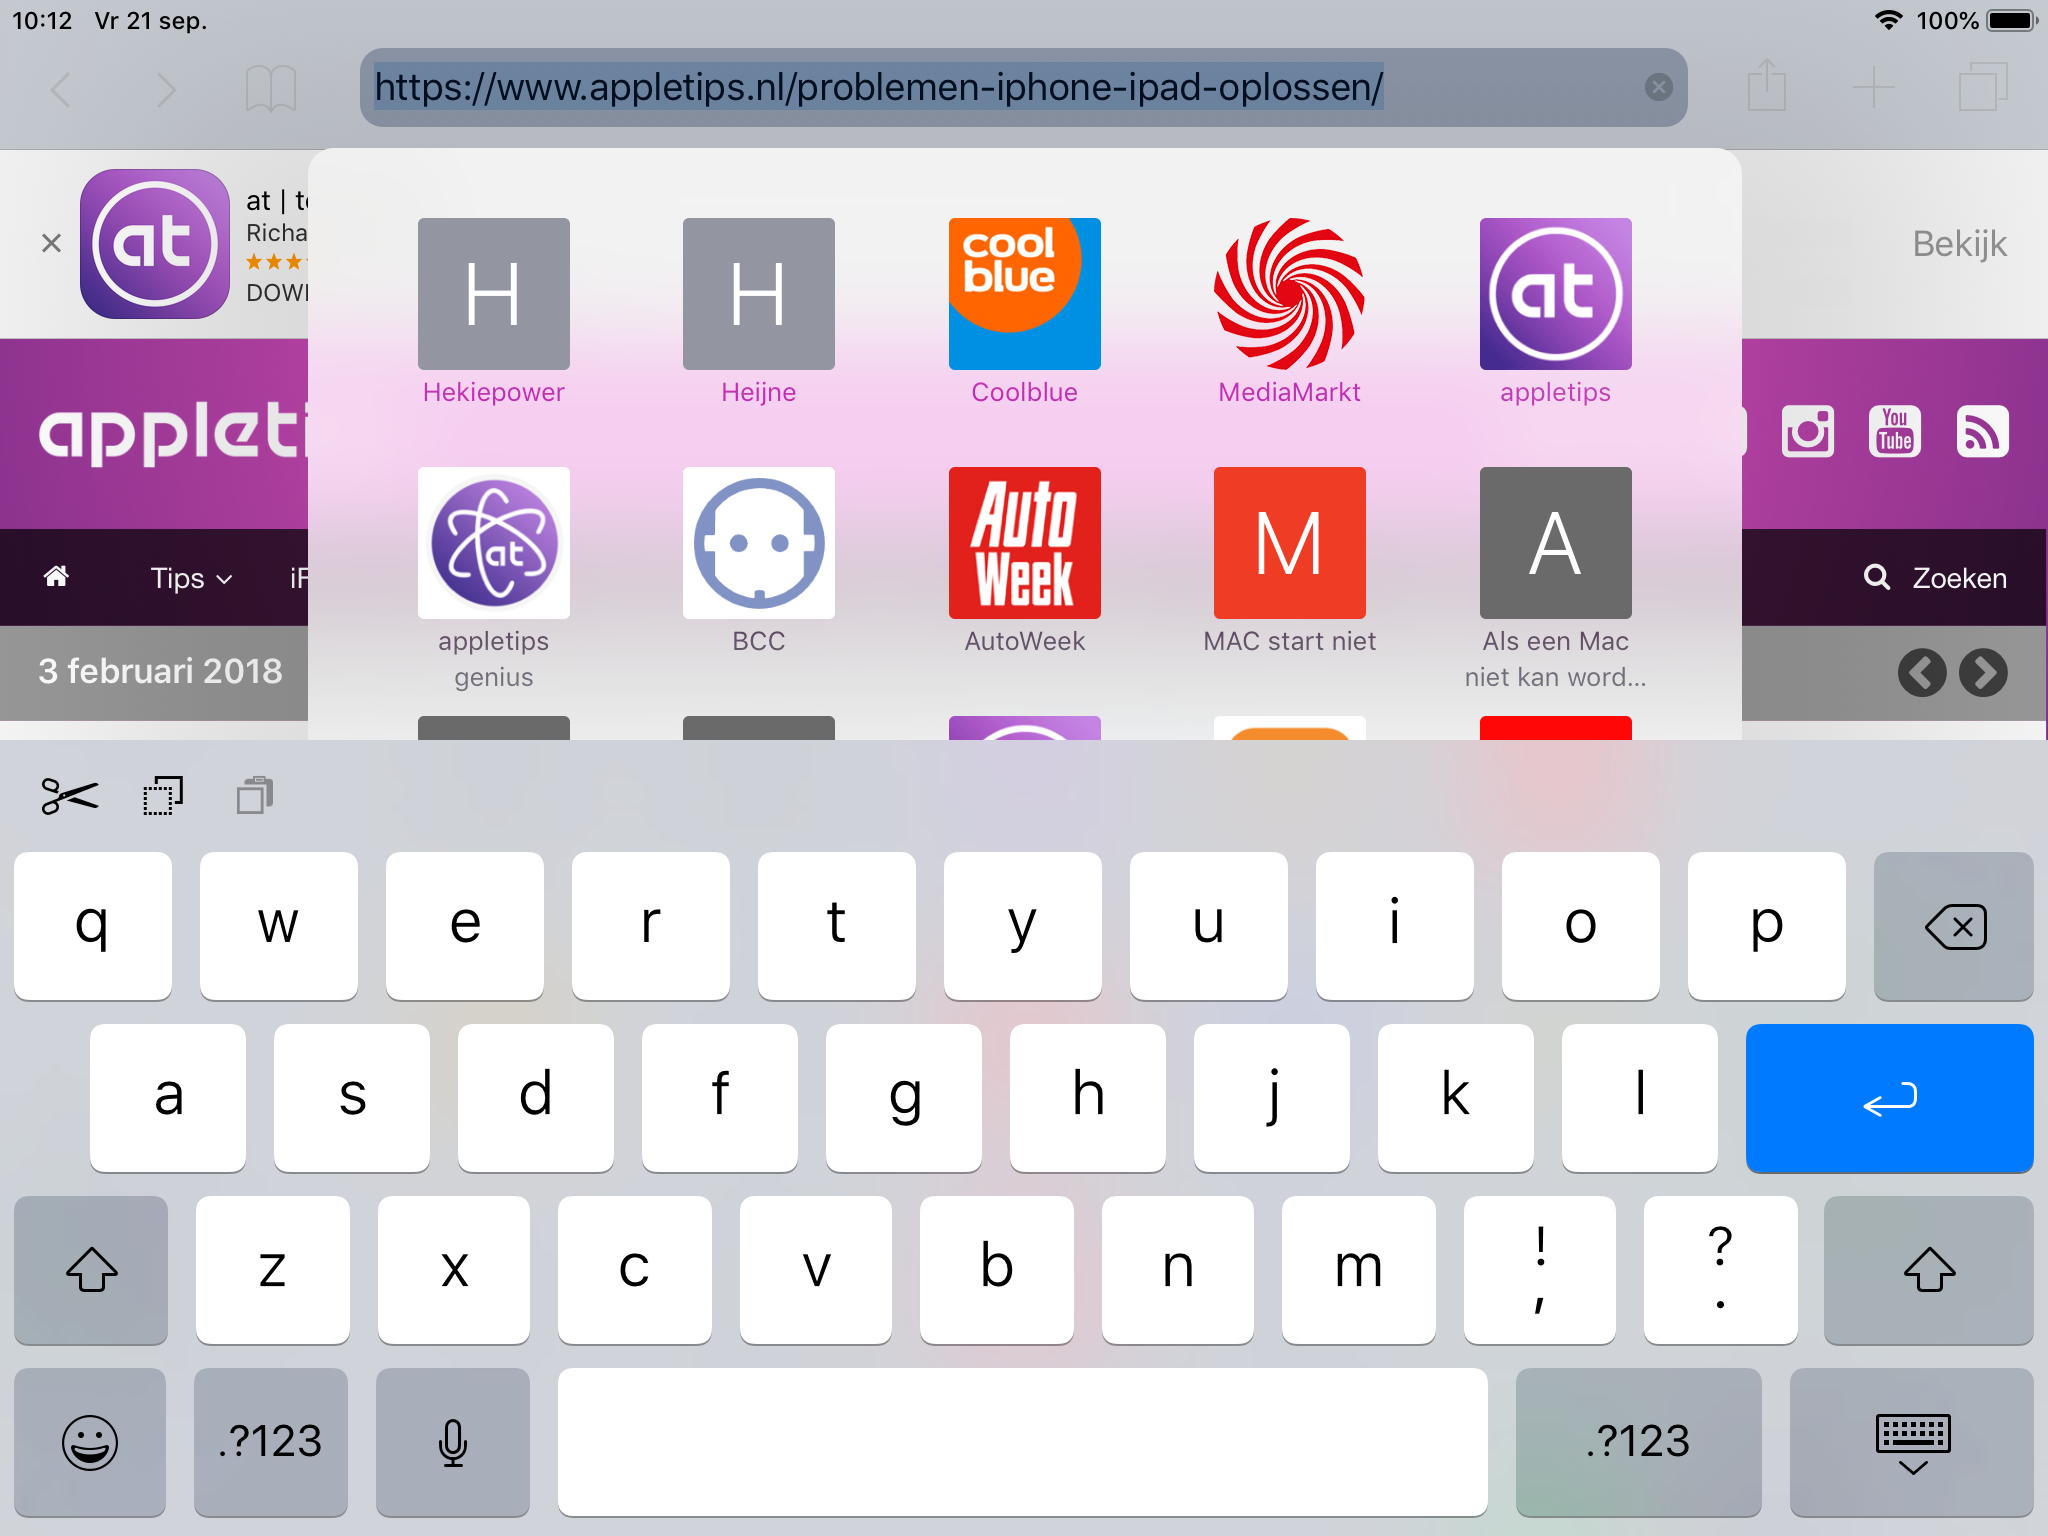 Verplicht Lada Airco Toetsenbord is veranderd op de iPad, maar op iPhone hetzelfde gebleven —  appletips genius